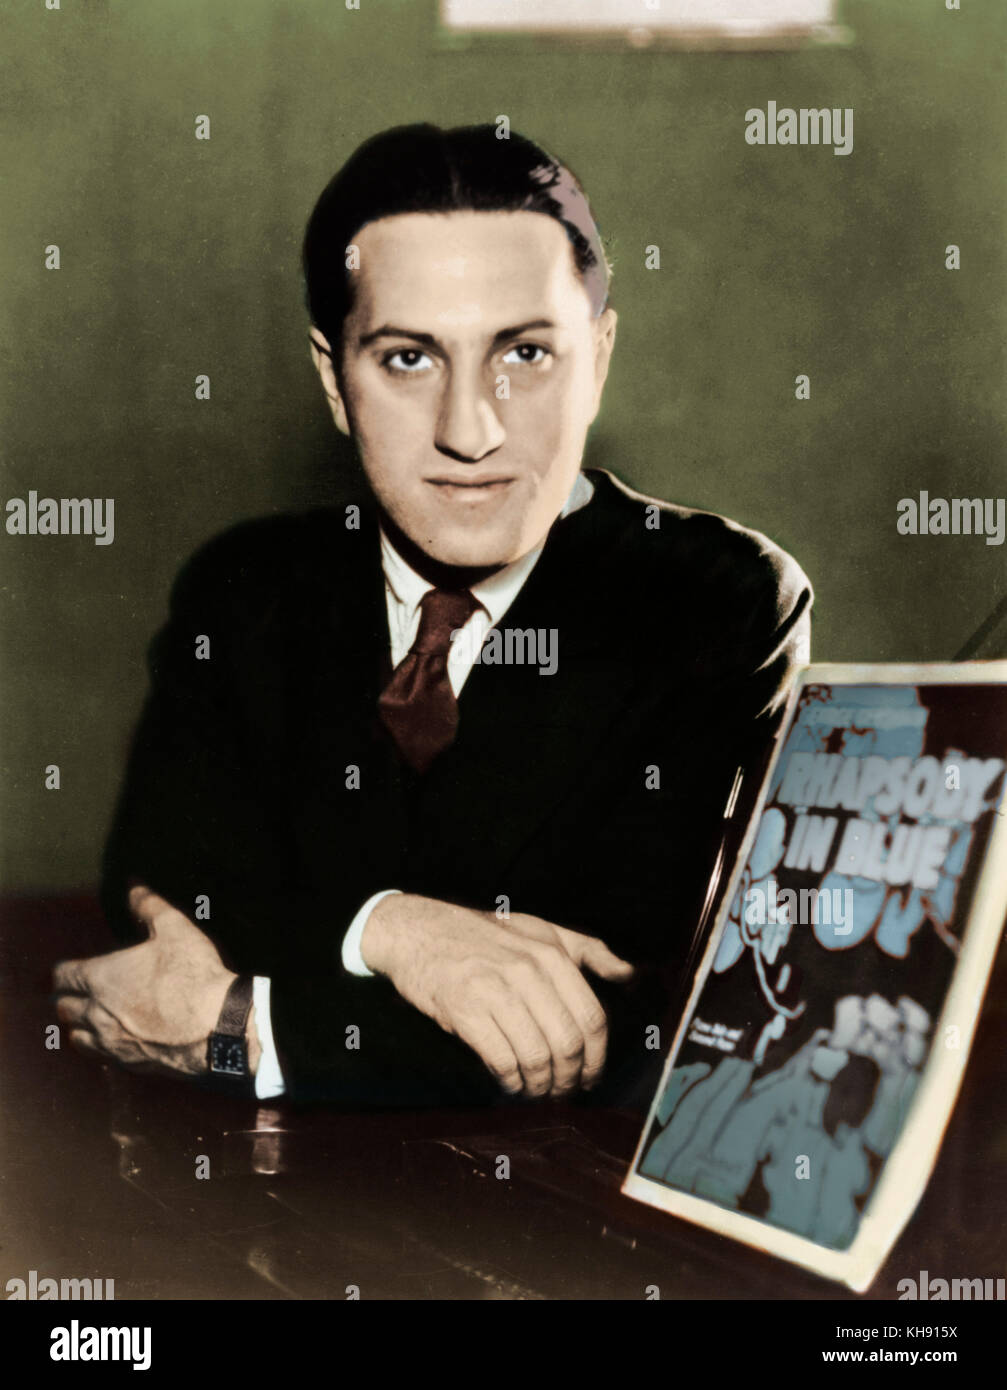 George Gershwin - Retrato . junto a la puntuación de cubierta de Rhapsody in blue. El compositor y pianista estadounidense el 26 de septiembre de 1898 - 11 de julio de 1937 Foto de stock